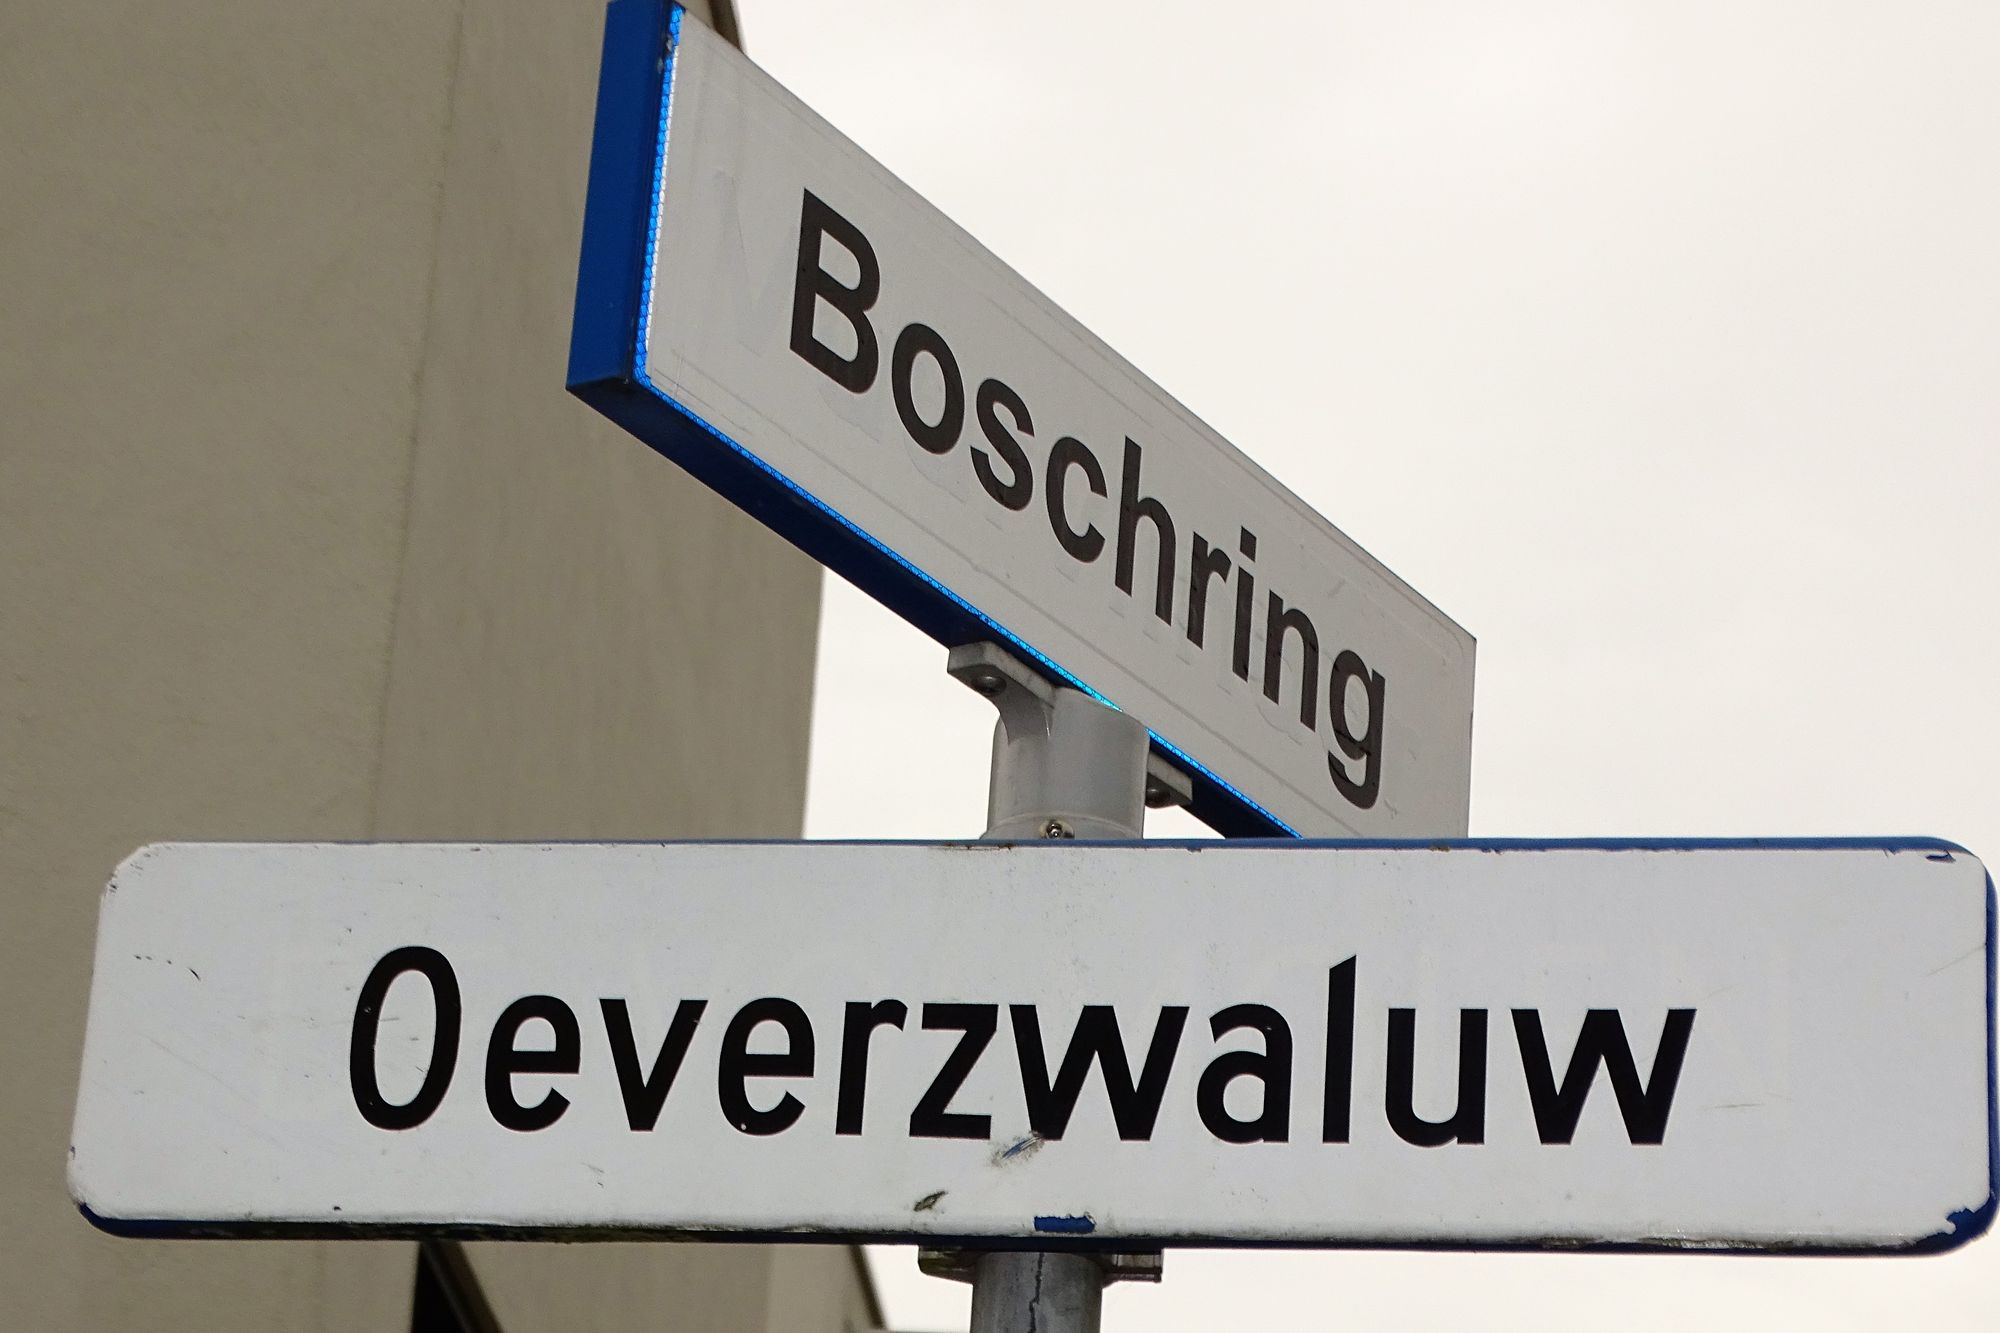 Straatnamen in Boschkens-west :
nomen est omen?